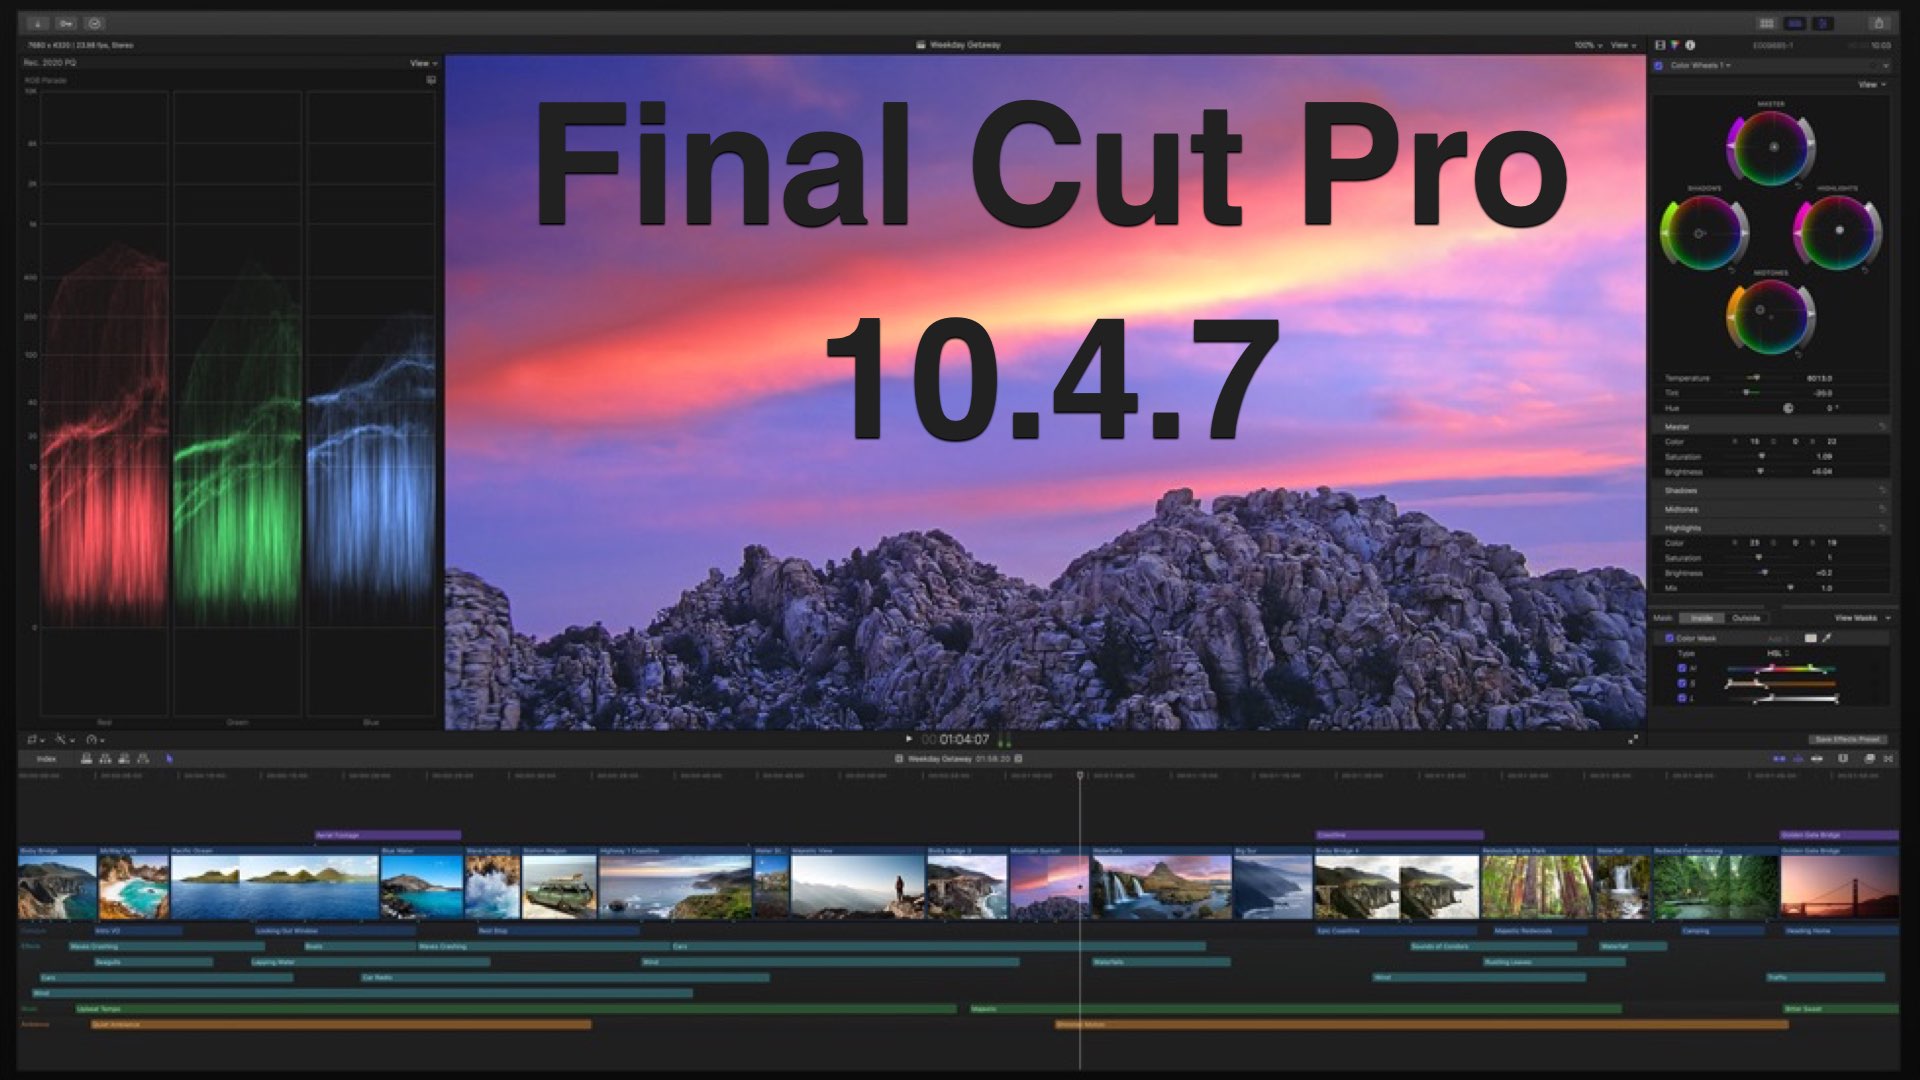 final cut pro x full version free